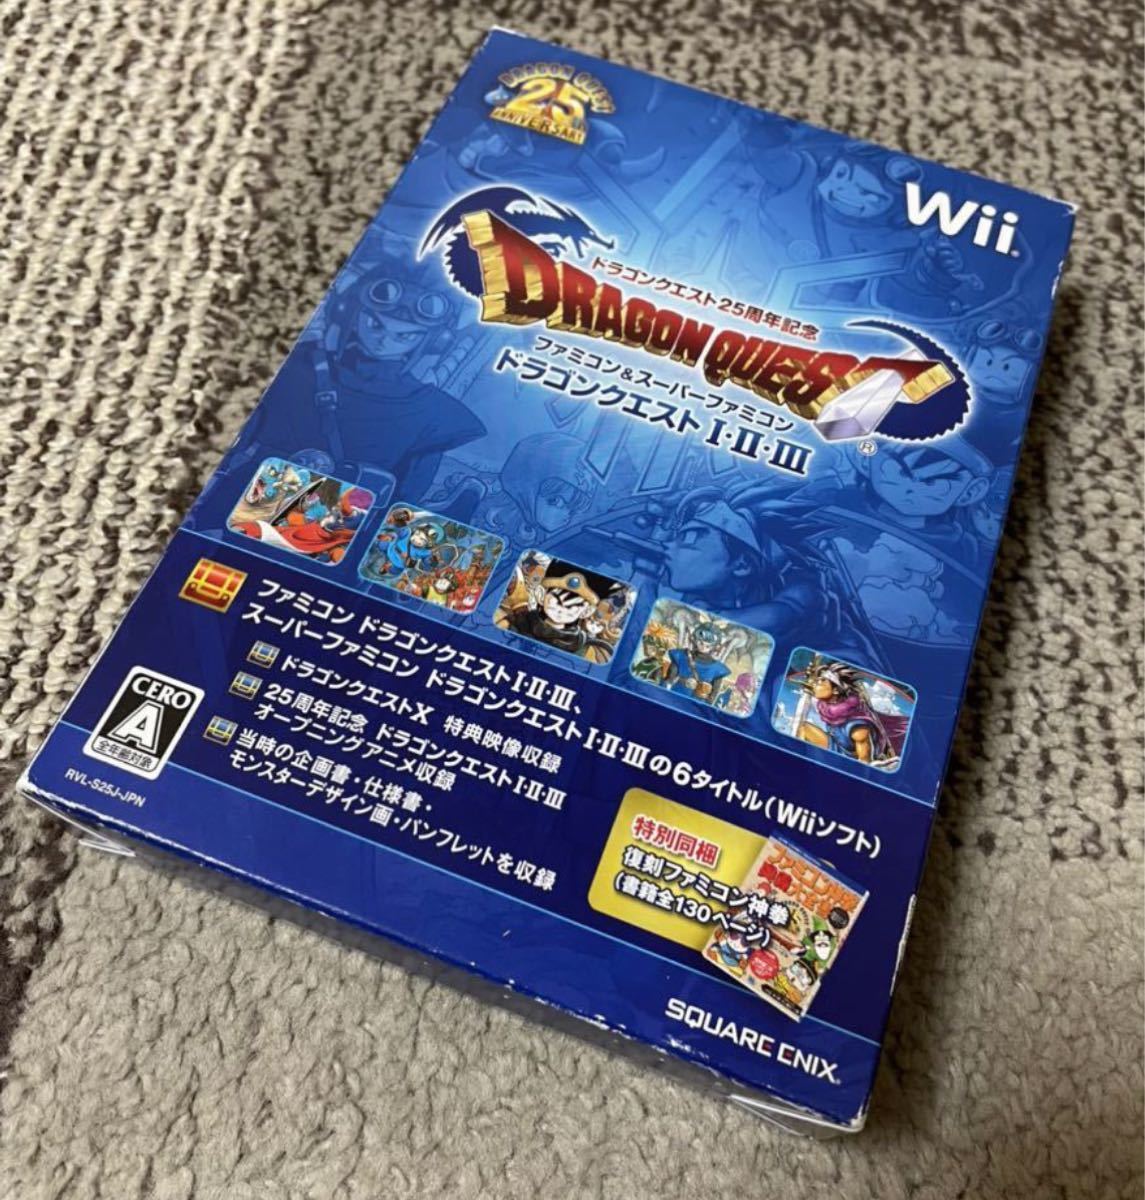 超美品 限定生産 任天堂Wii ドラゴンクエスト25周年記念 ファミコンスーパーファミコン ドラクエI・II・III 攻略本付属 